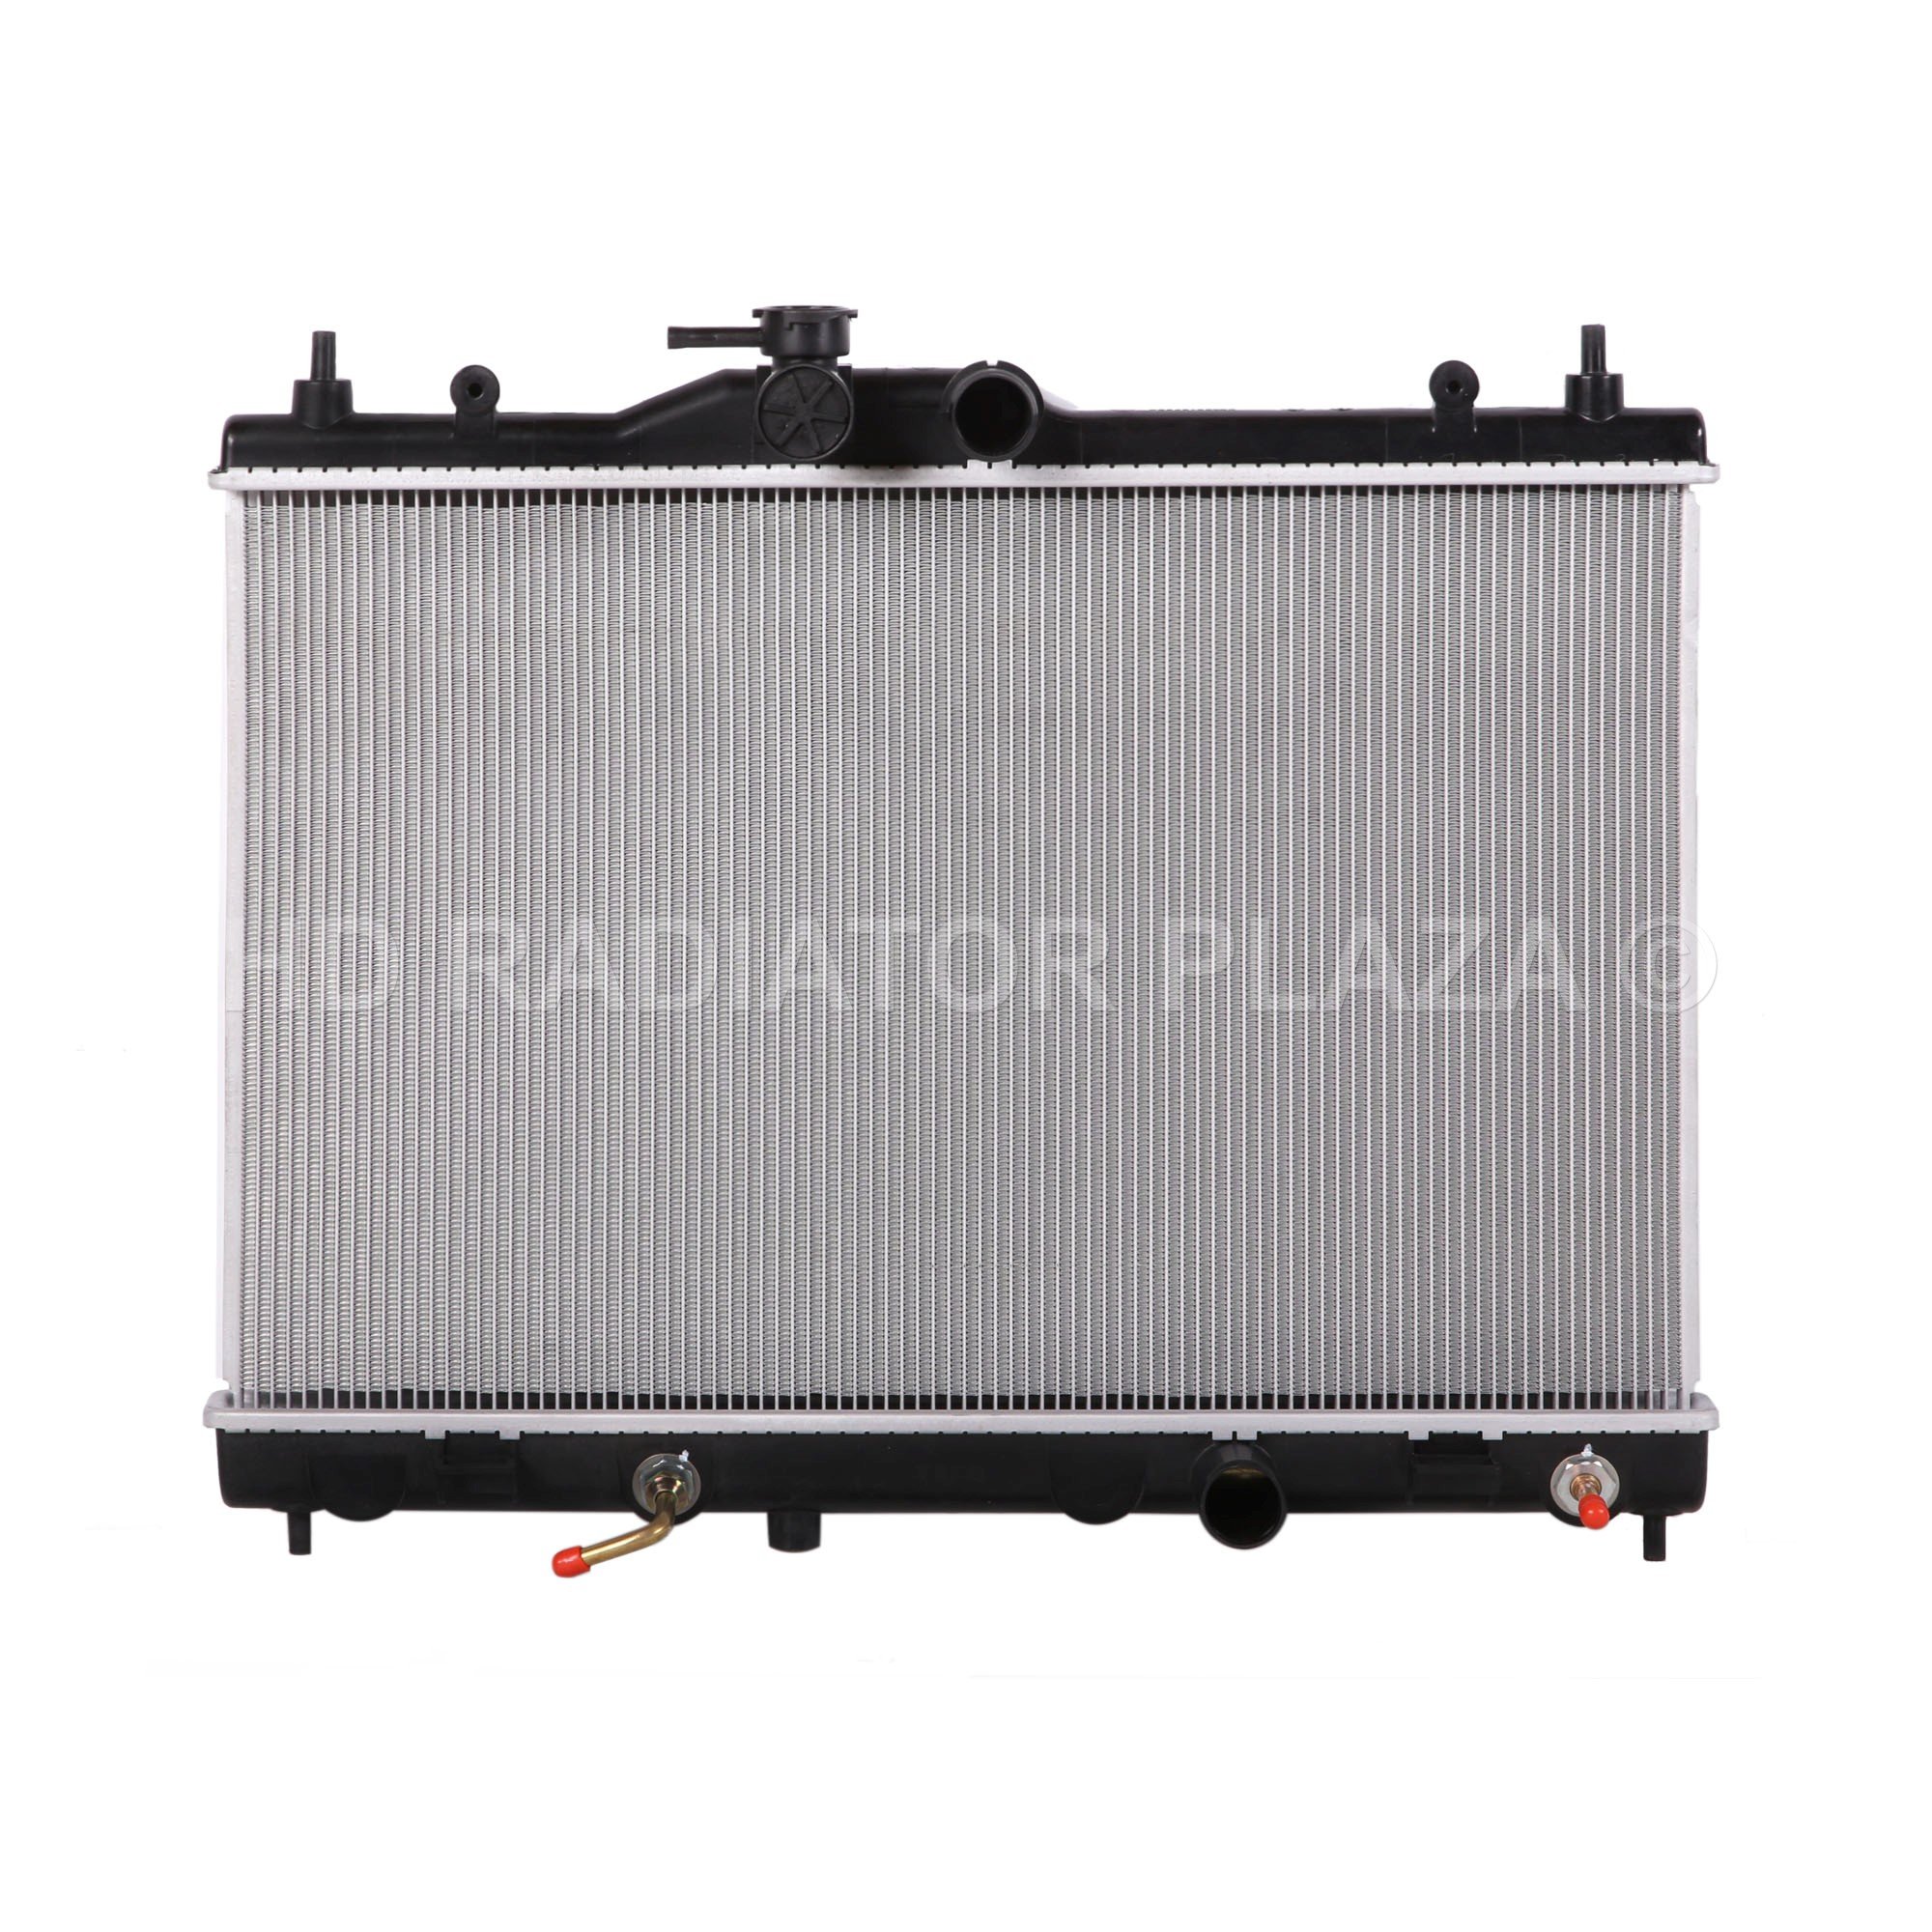 Radiator for 07-09 Nissan Versa I4 1.6l / 1.8l